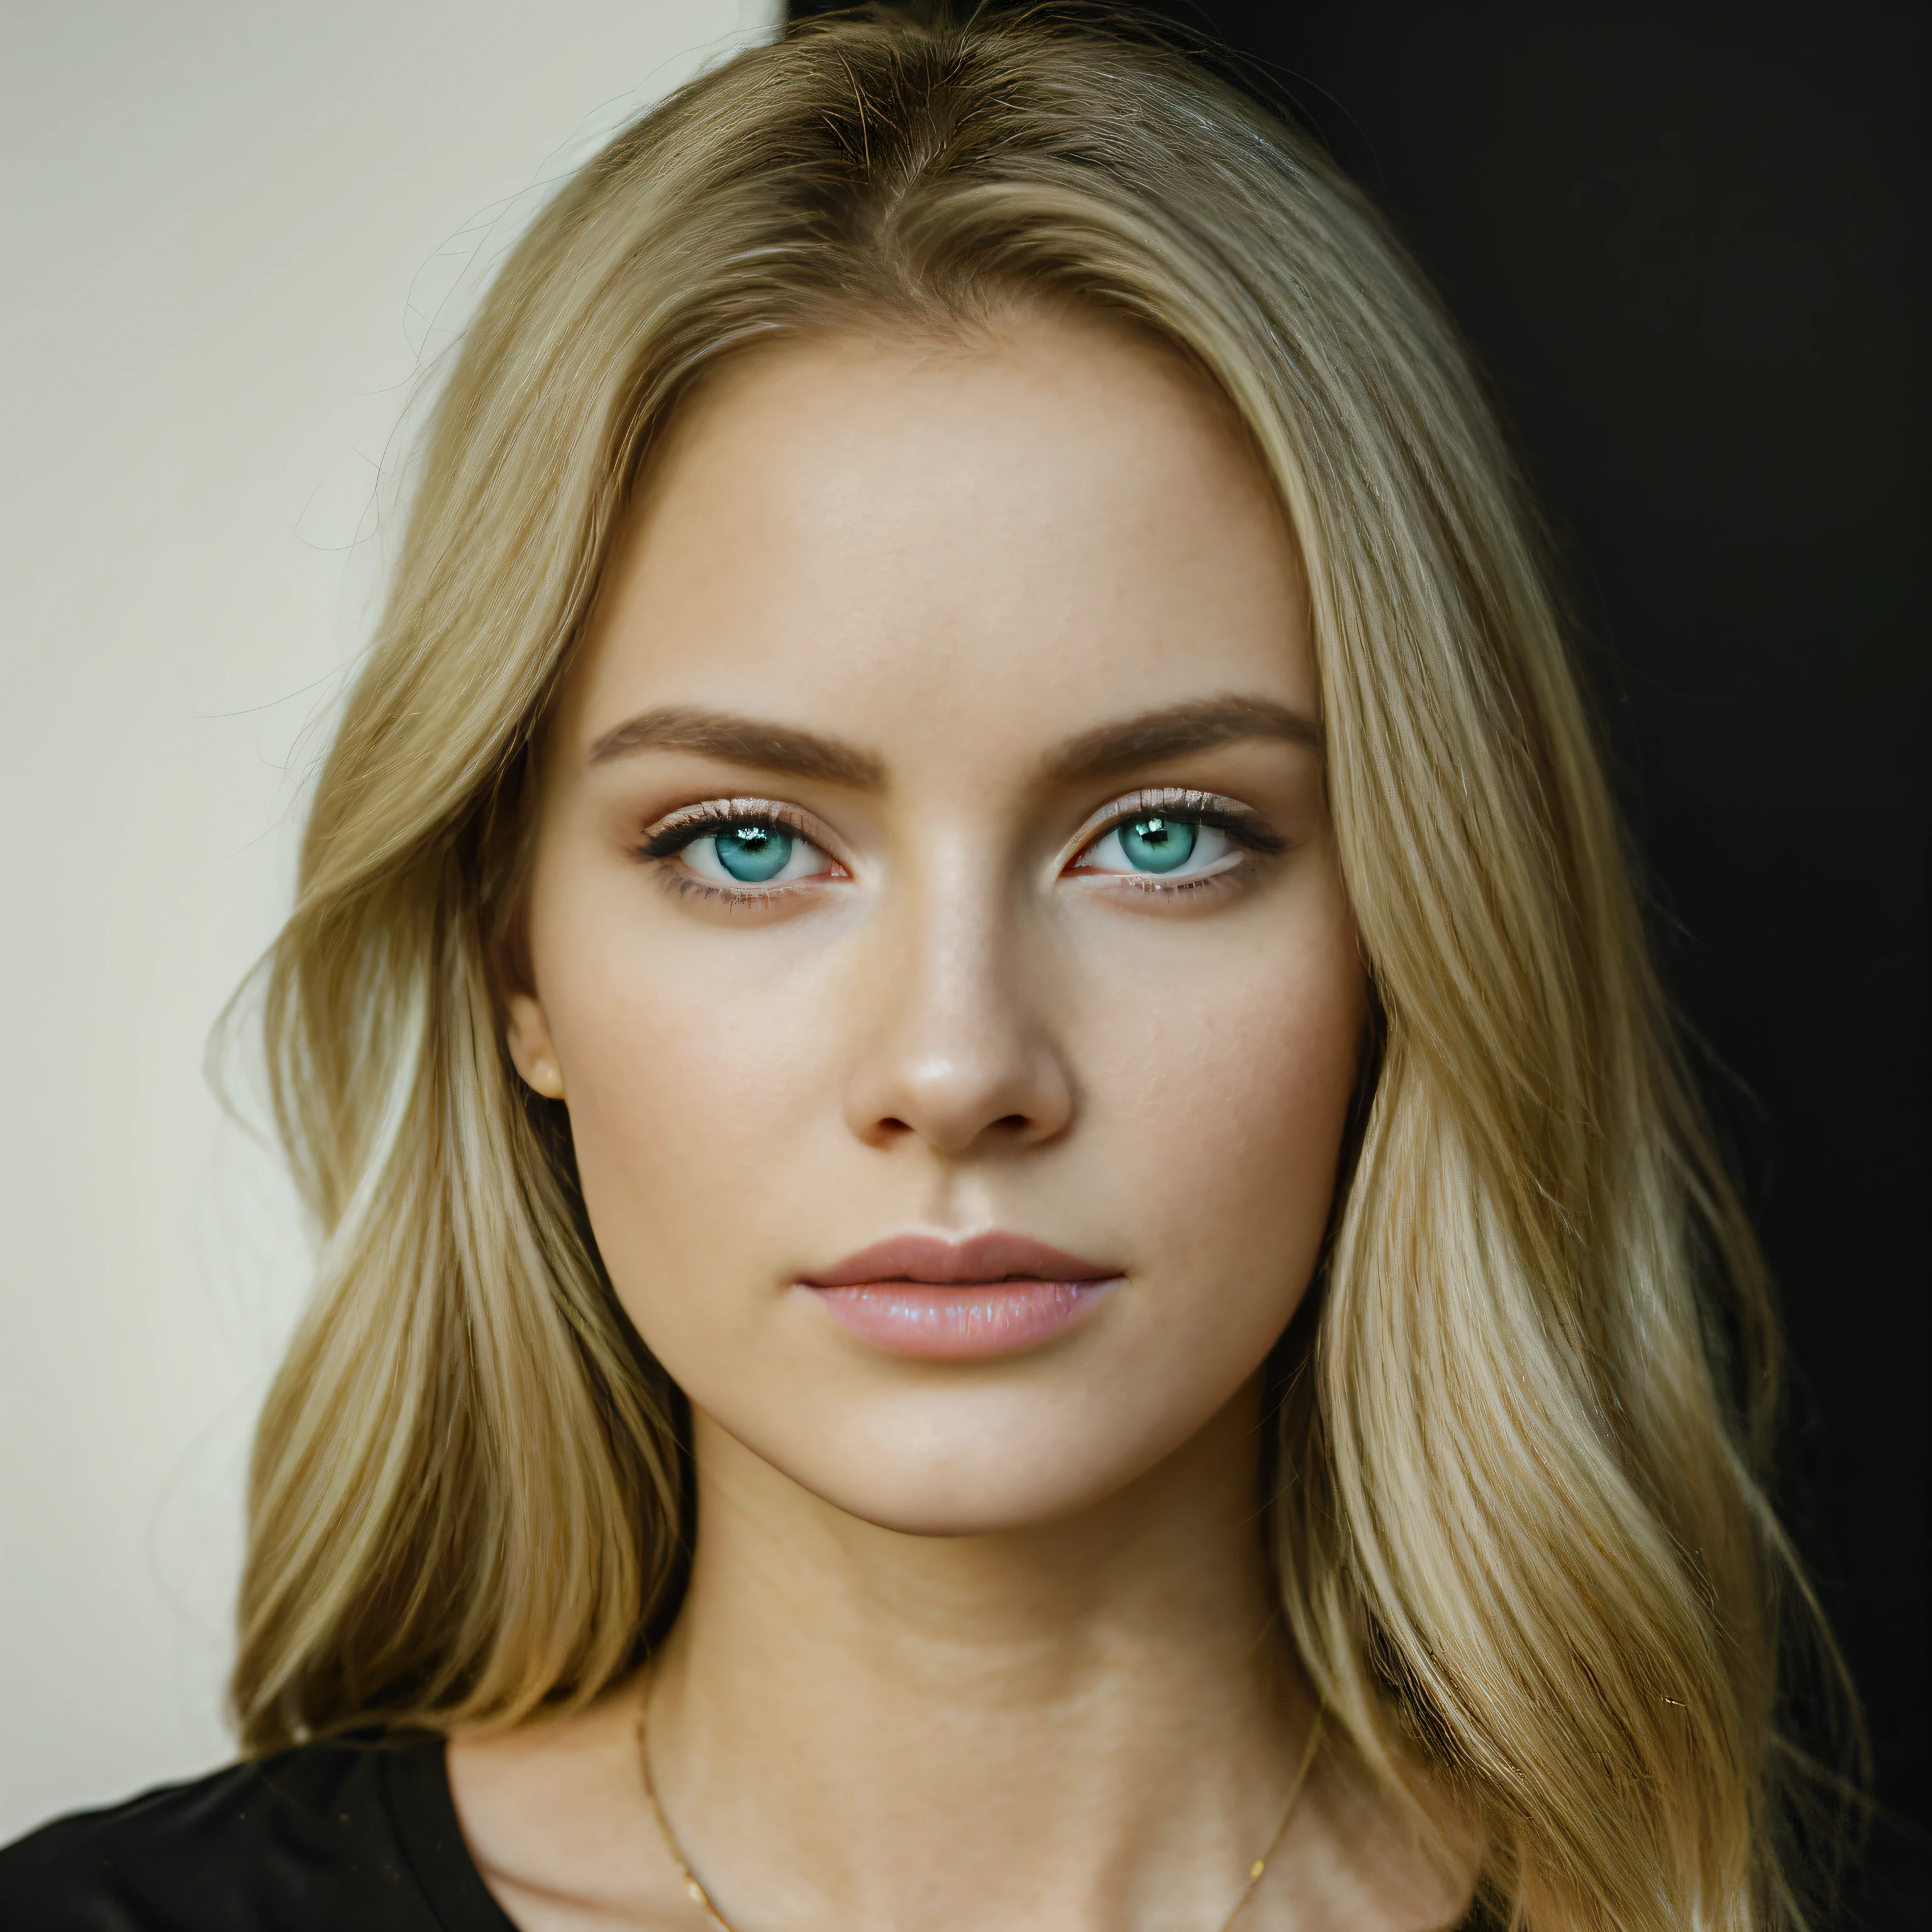 Realista rubia clara hermosa camisa negra con cuello en v mujeres sexy, ojos verdes azules, foto retrato